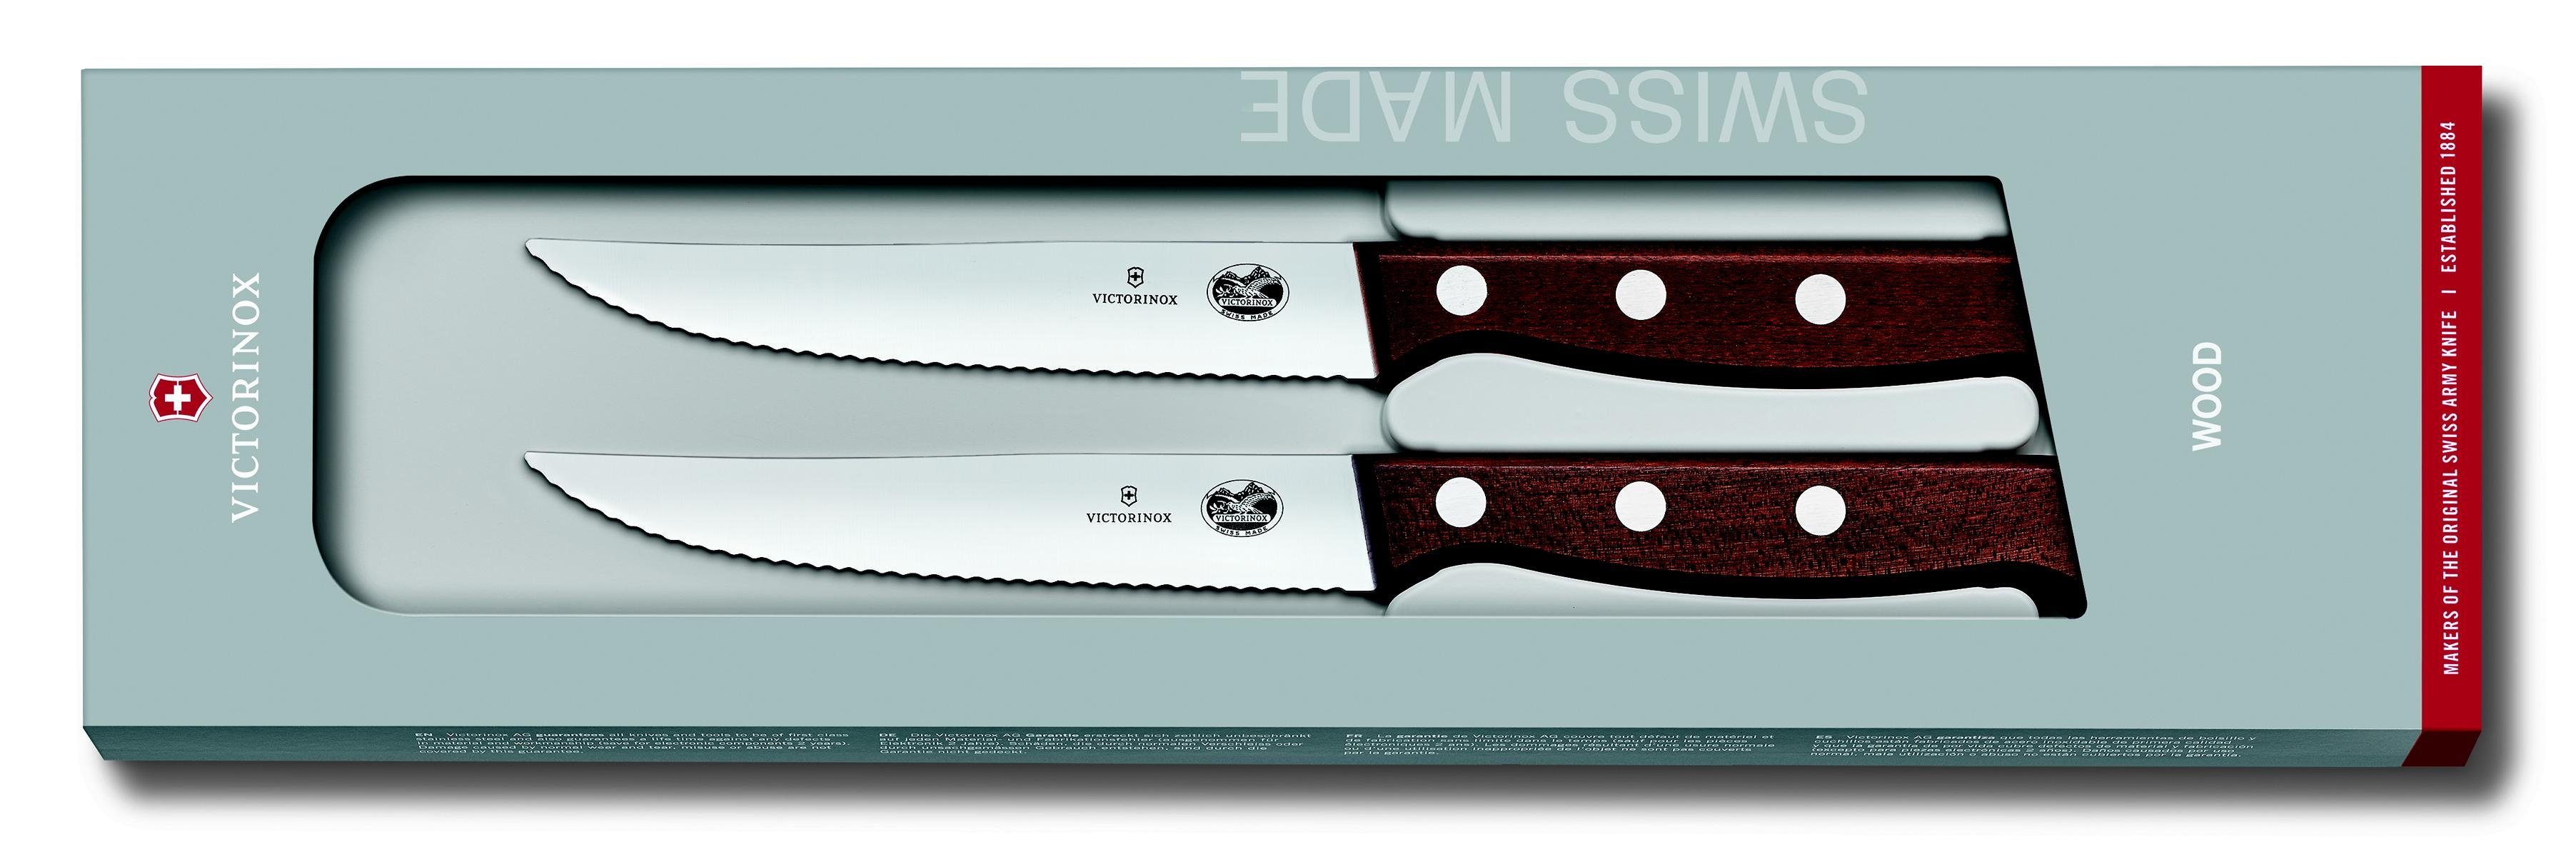 12 cm, Steakmesser-Set, Ahornholz,Wellenschliff, mod 2-teilig Victorinox Taschenmesser